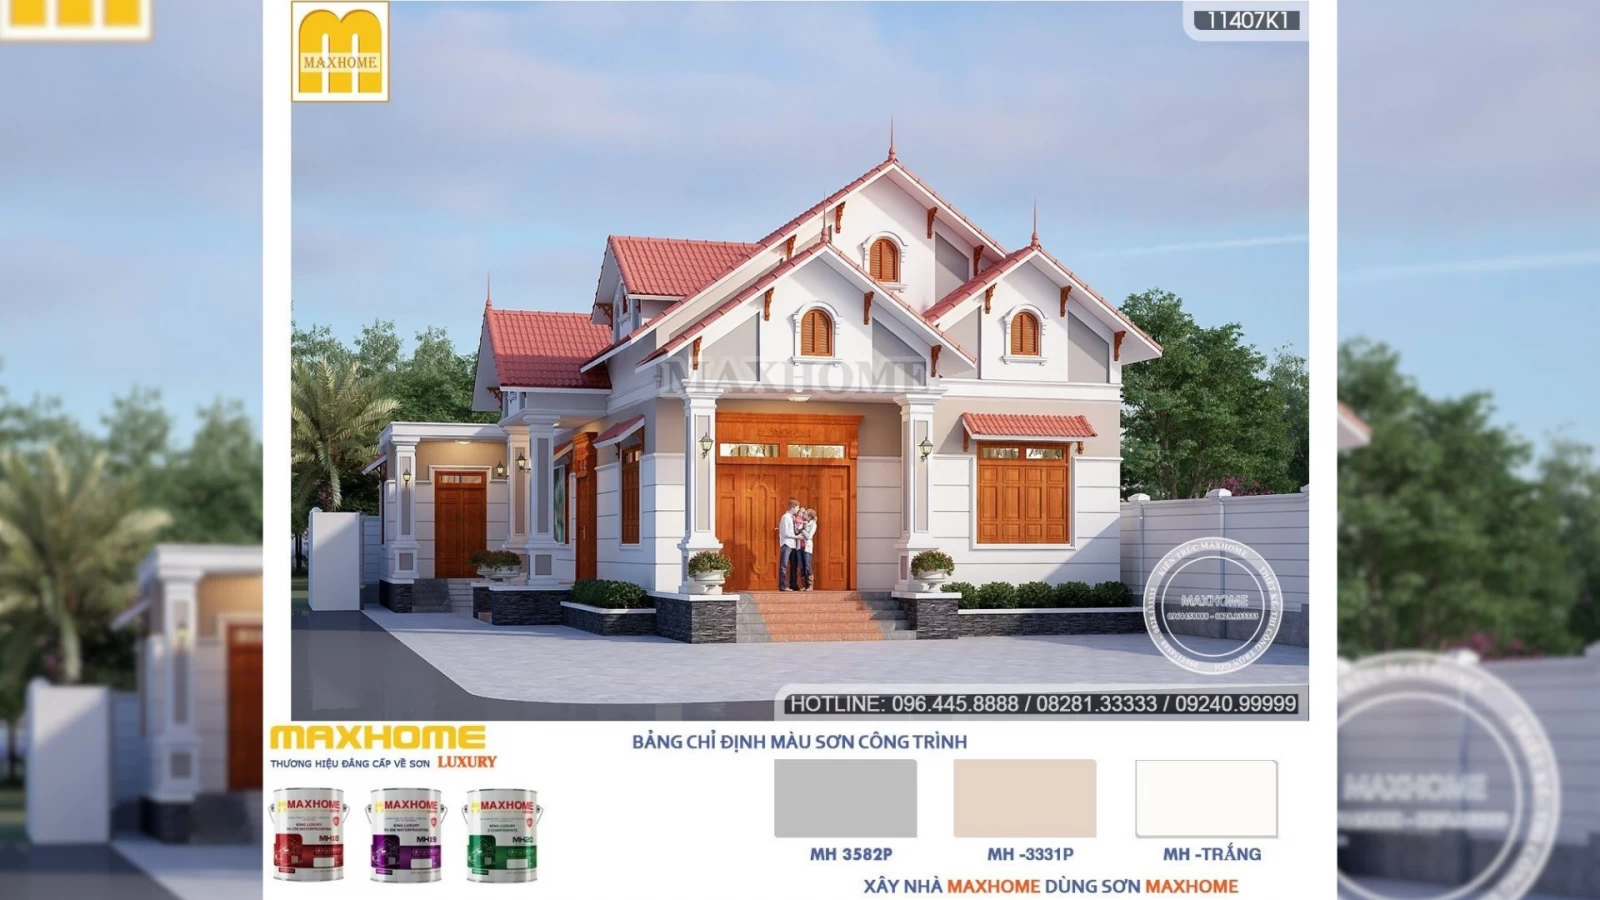 Bán bản vẽ nhà mái Thái tân cổ điển đẹp cuốn hút người xem | MH02333